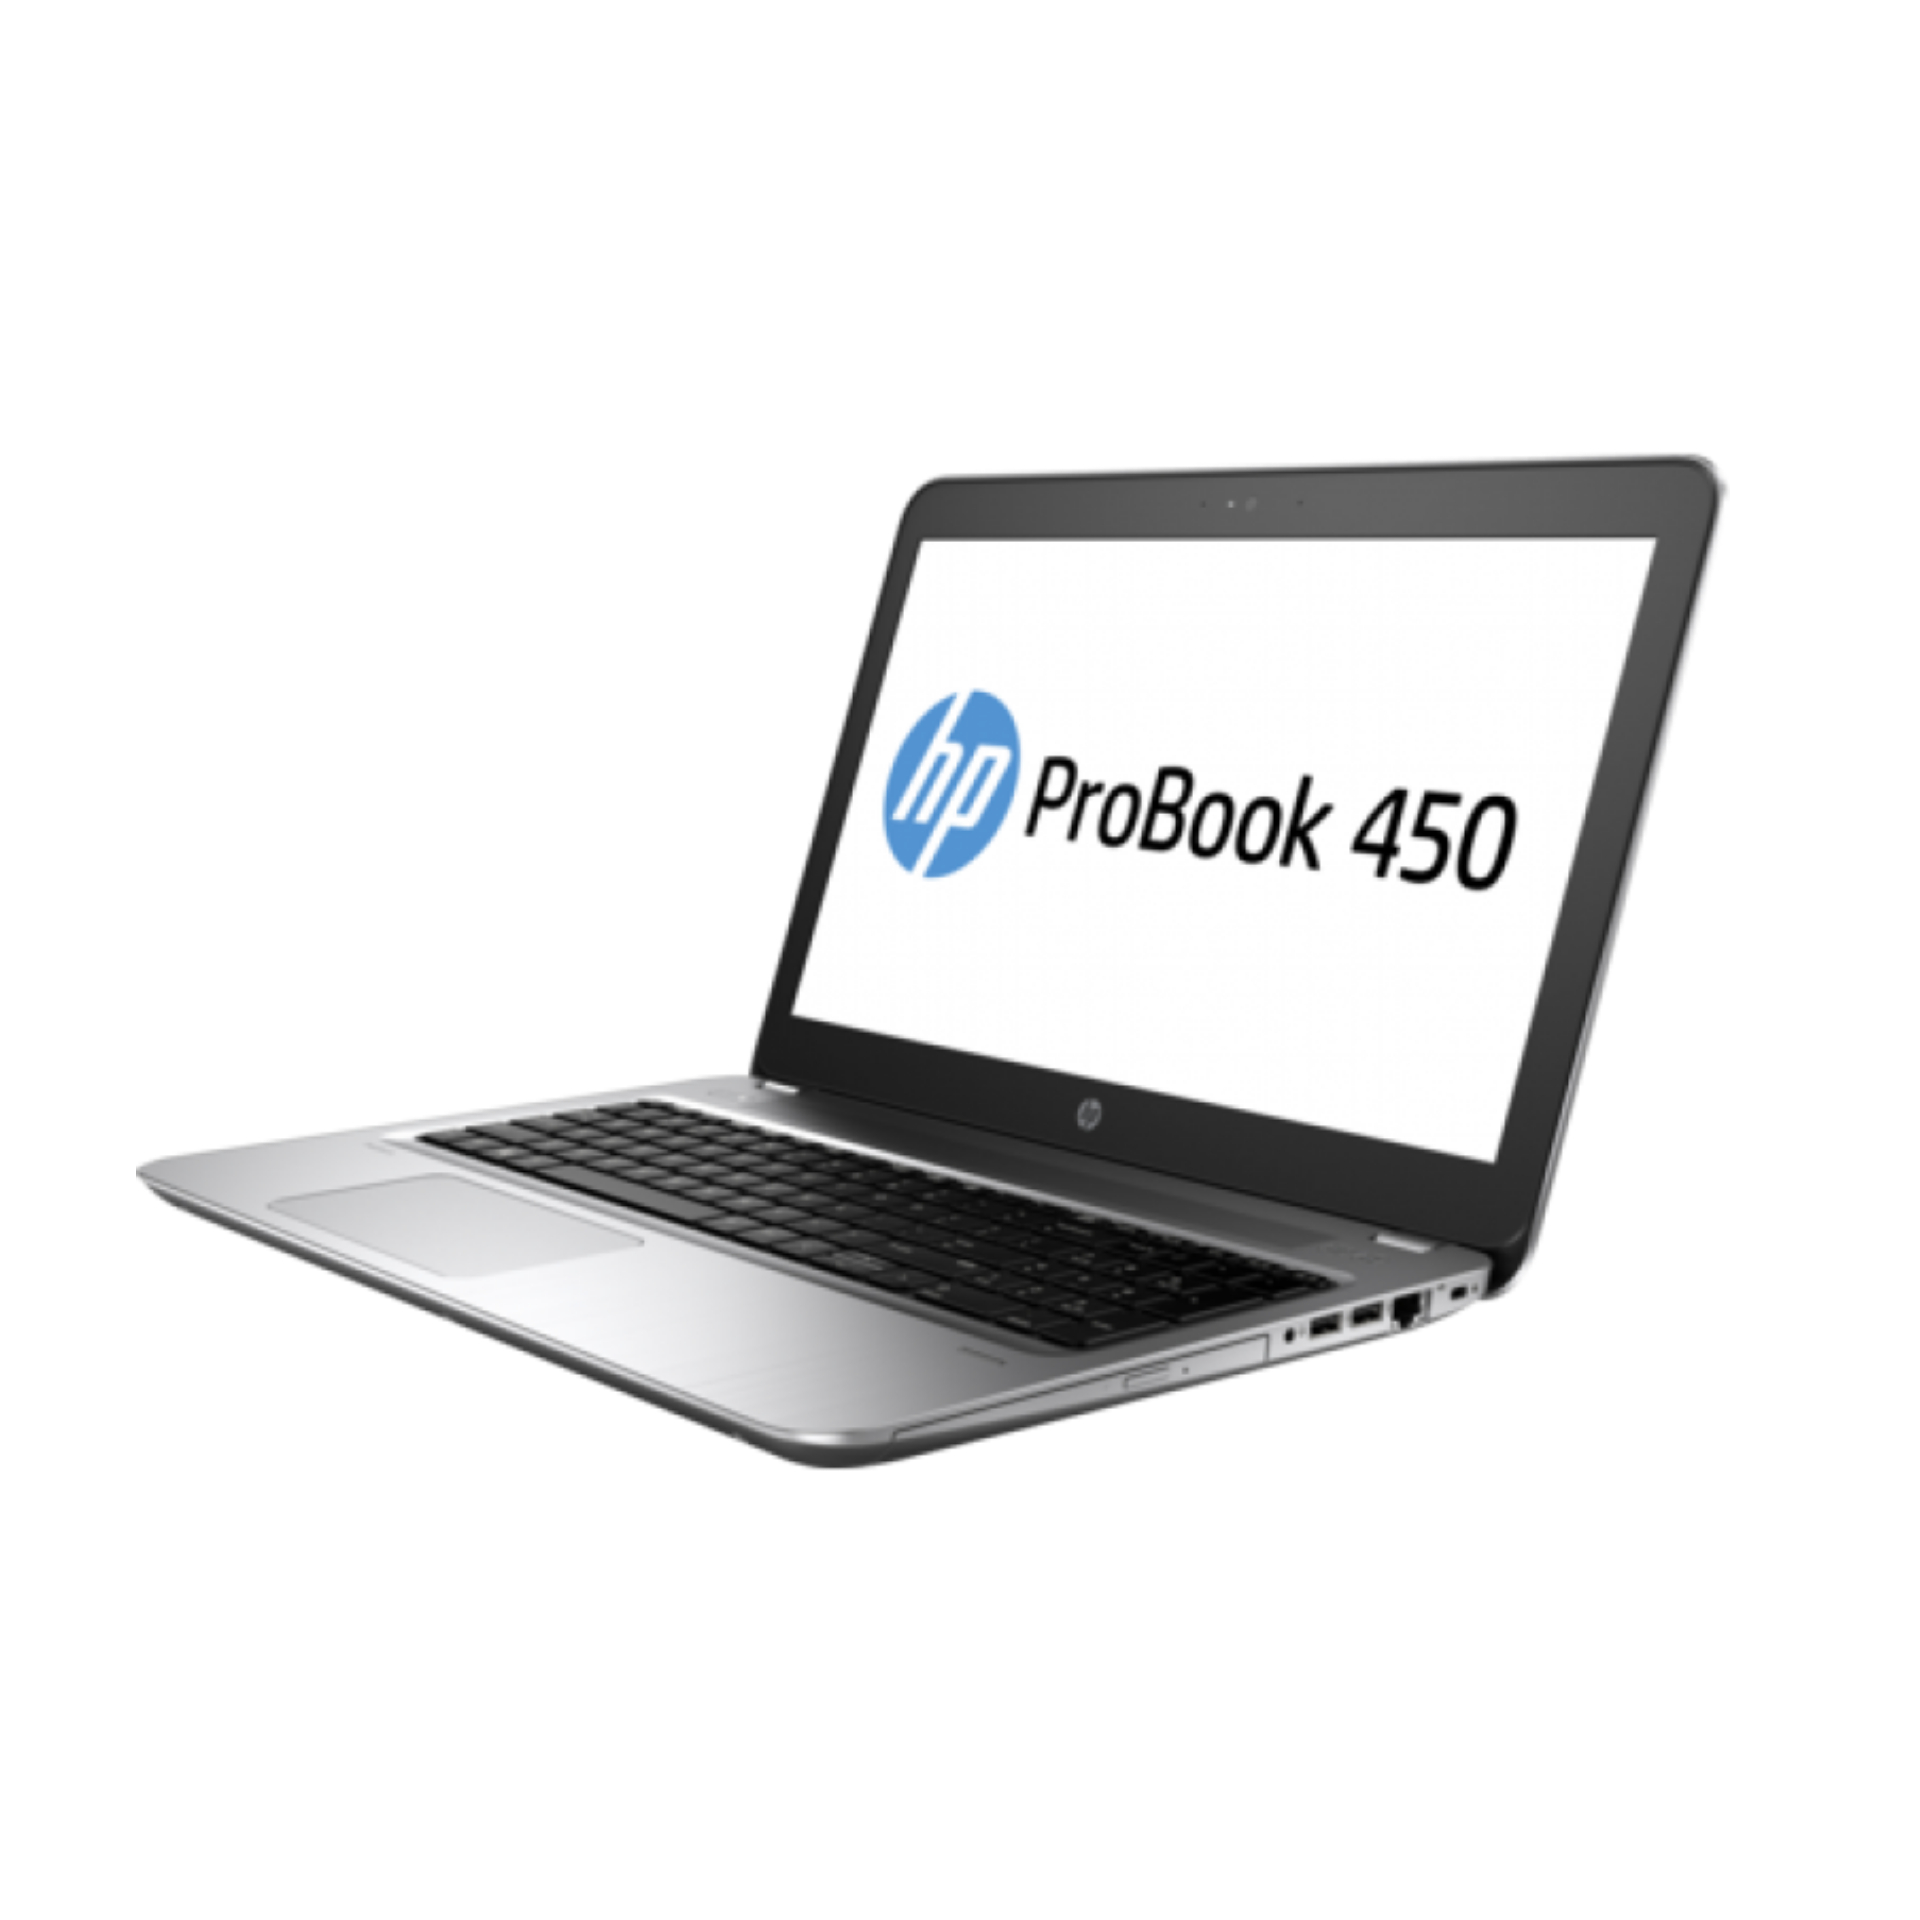 HP Probook 450 G3 core i3 laptop best price in Kenya | DealBora Kenya